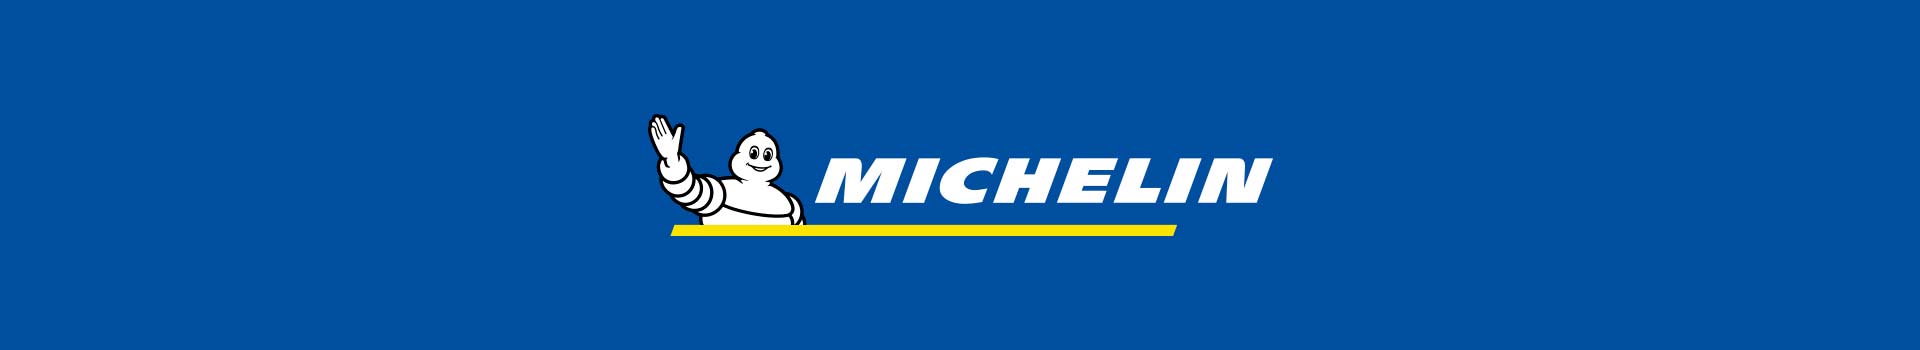 michelin-banner